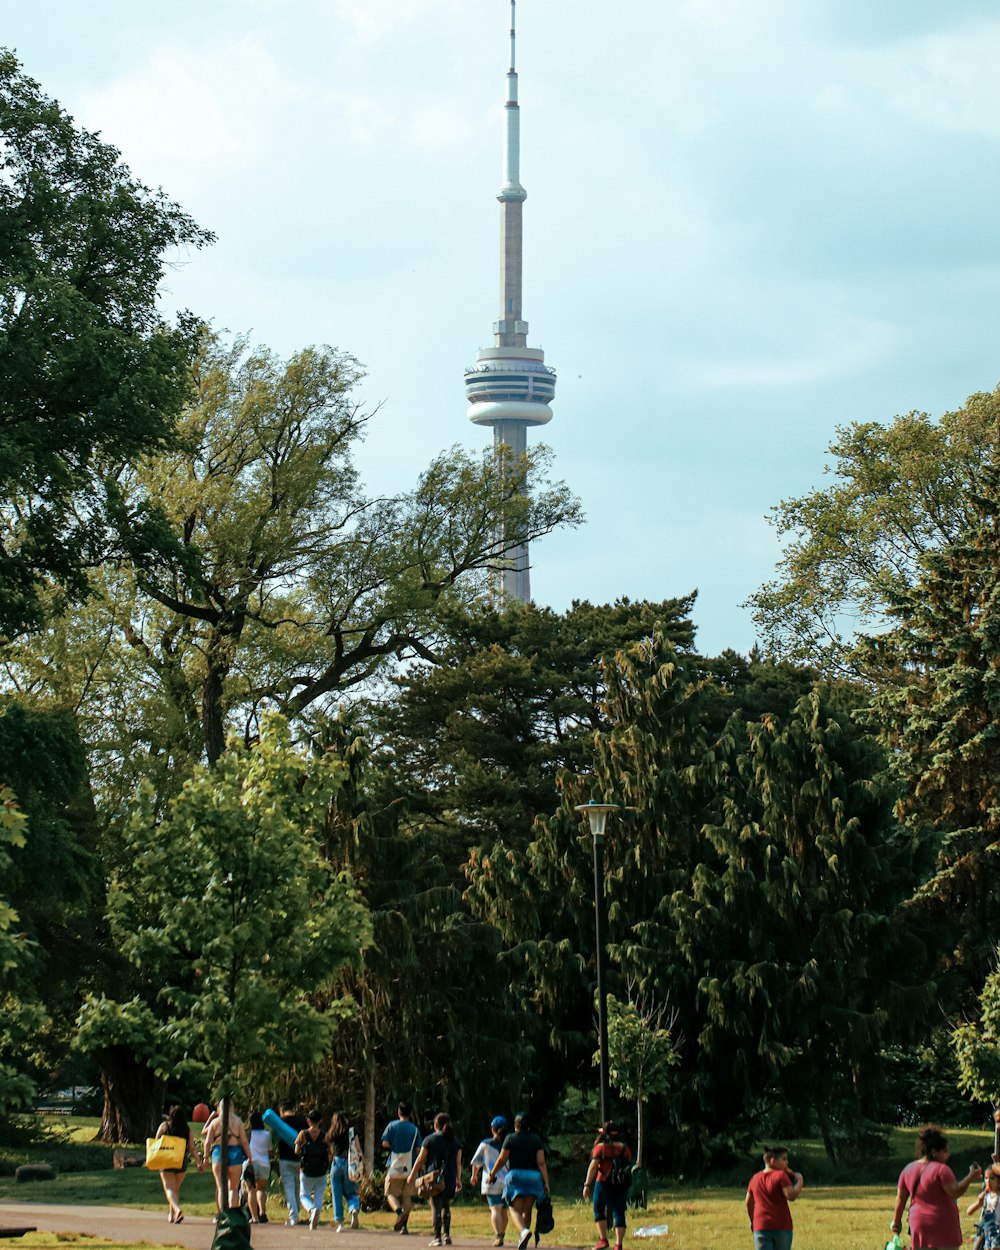 背の高い先のとがった塔を背景に公園を歩く人々のグループ